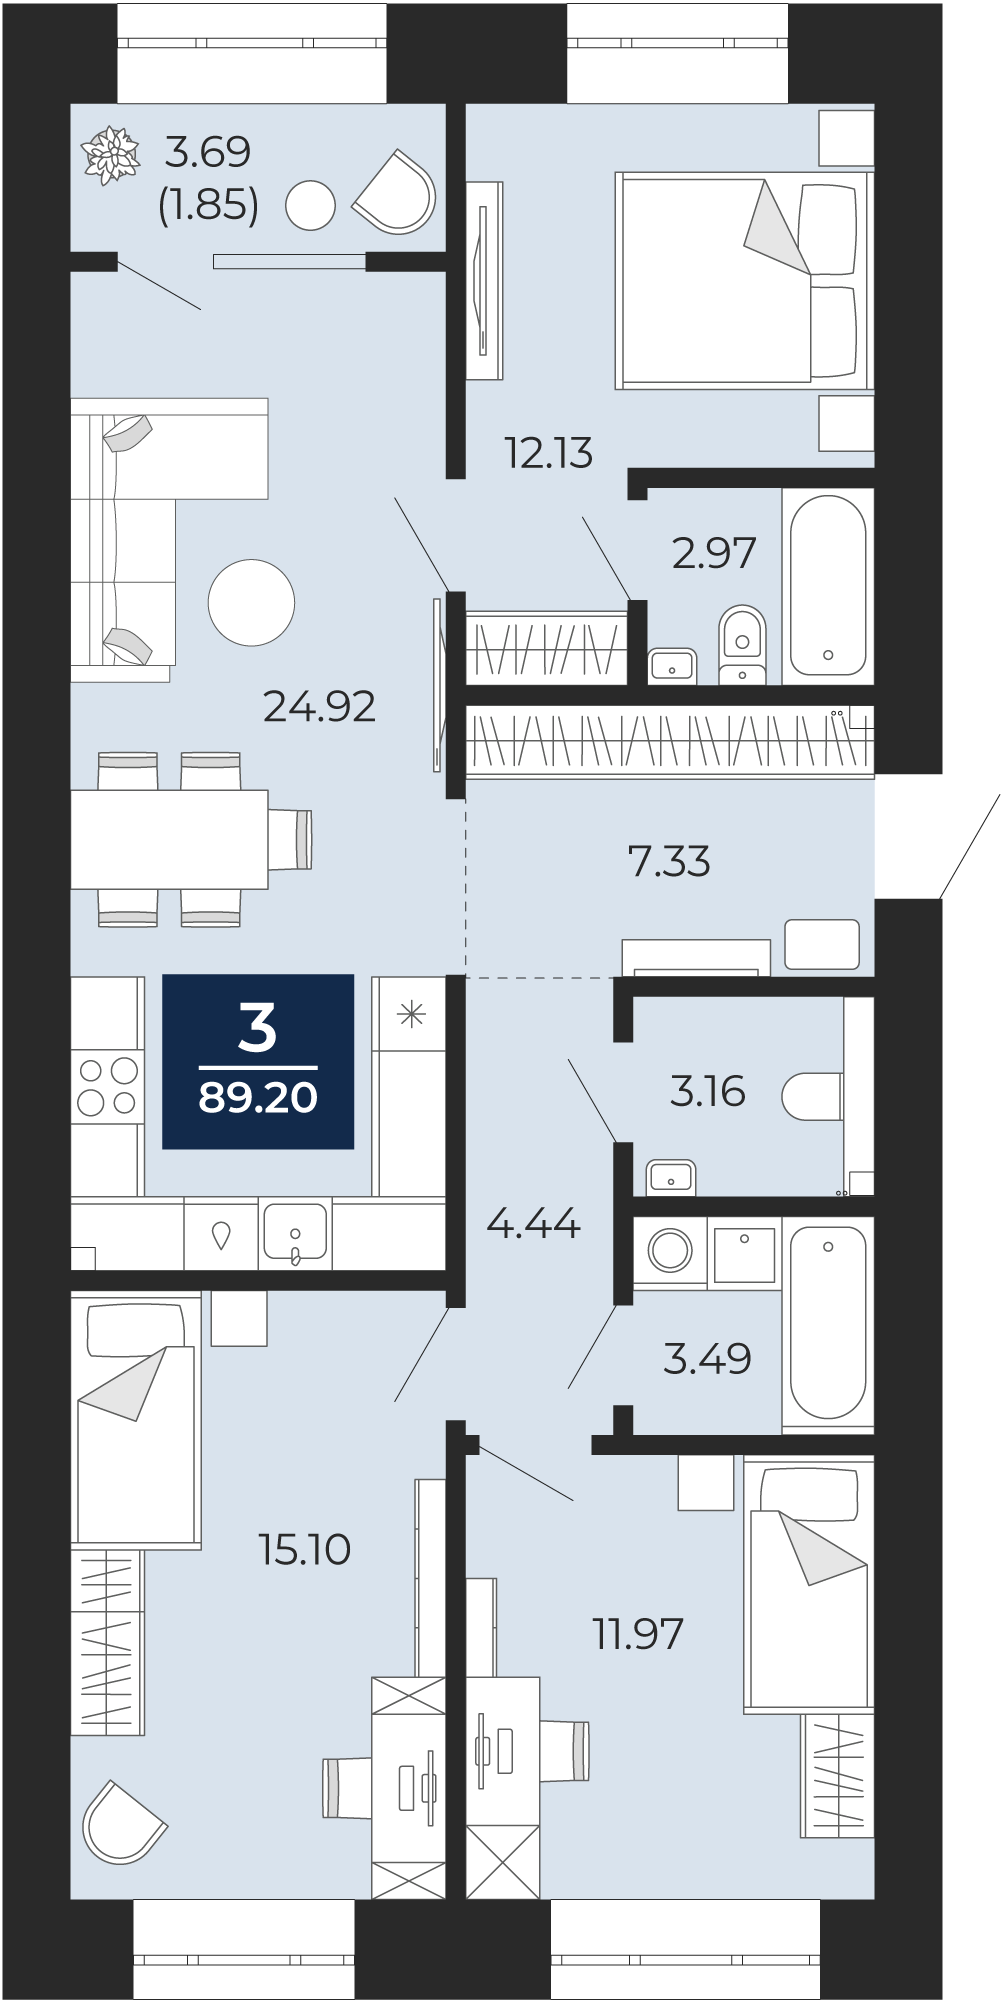 Квартира № 131, 3-комнатная, 89.2 кв. м, 2 этаж